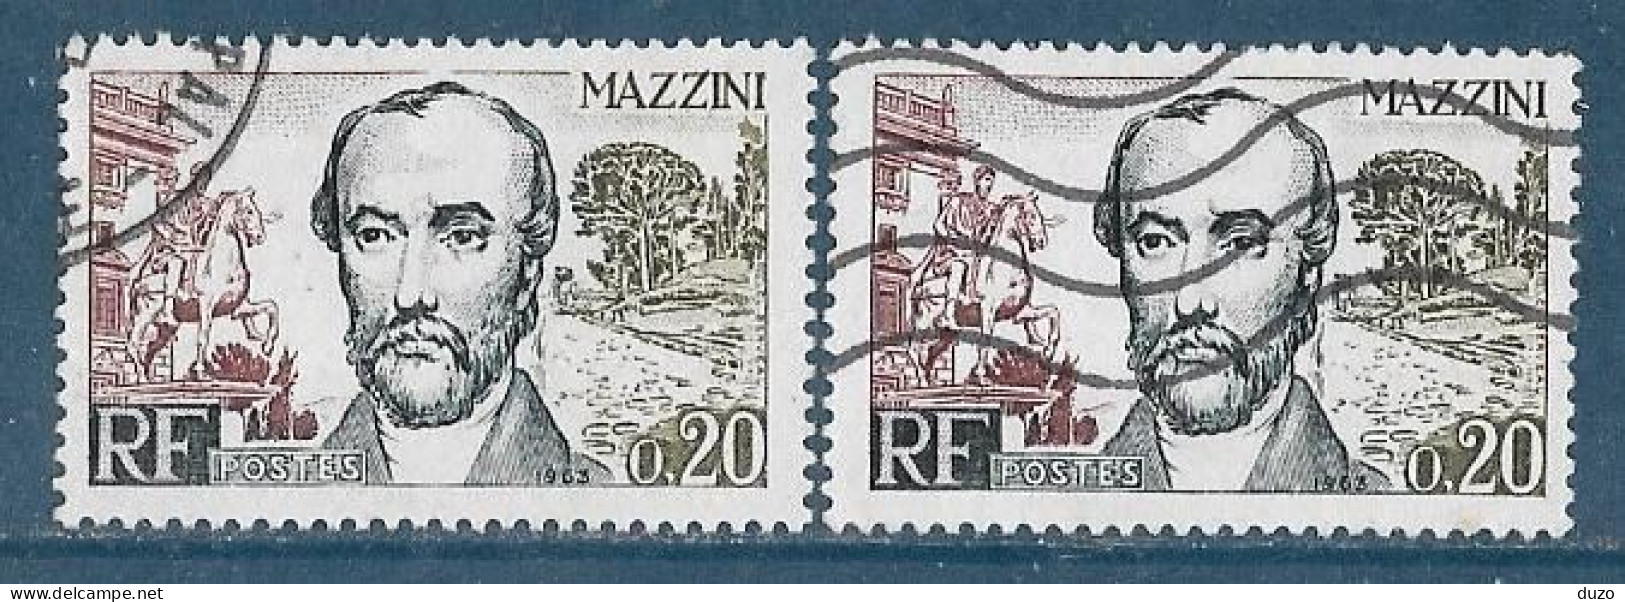 France 1963 - Variété - Y&T N° 1384 Mazzini (oblit) 1 Exemplaire Normal Gris Clair + 1 Gris Foncé. - Used Stamps